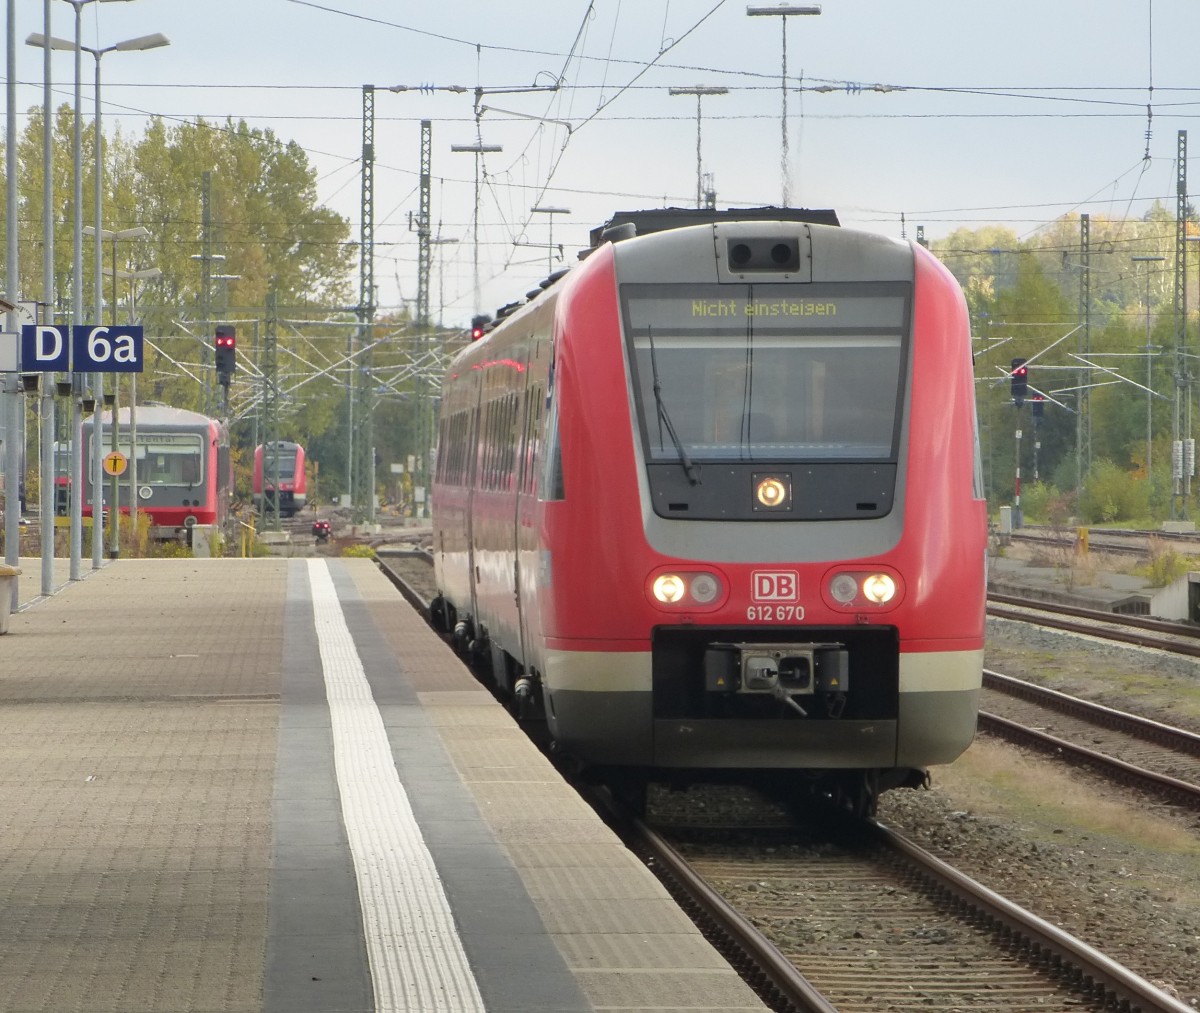 612 670 fährt hier am 12.10.2013 in die Abstellung vom Hofer Hbf.
Der Triebzug kam zuvor als IRE aus Nürnberg.